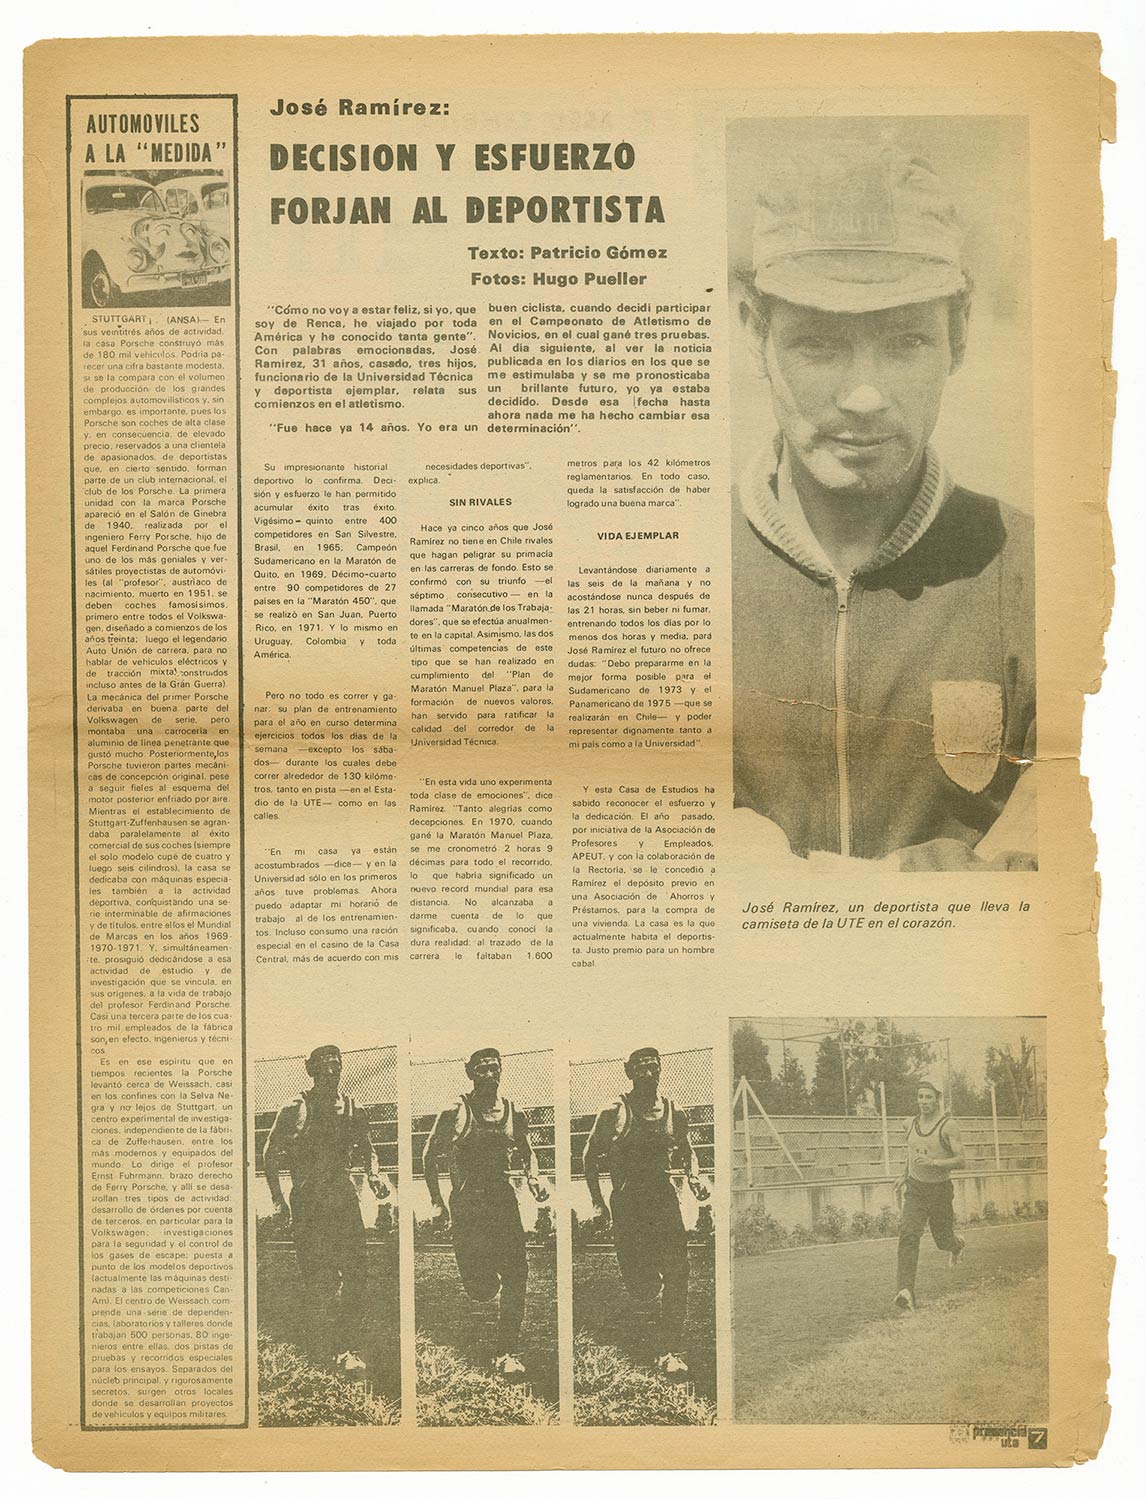 Presencia UTE, año 1 N°3, 1972 José Ramírez, atleta u funcionario de la UTE.